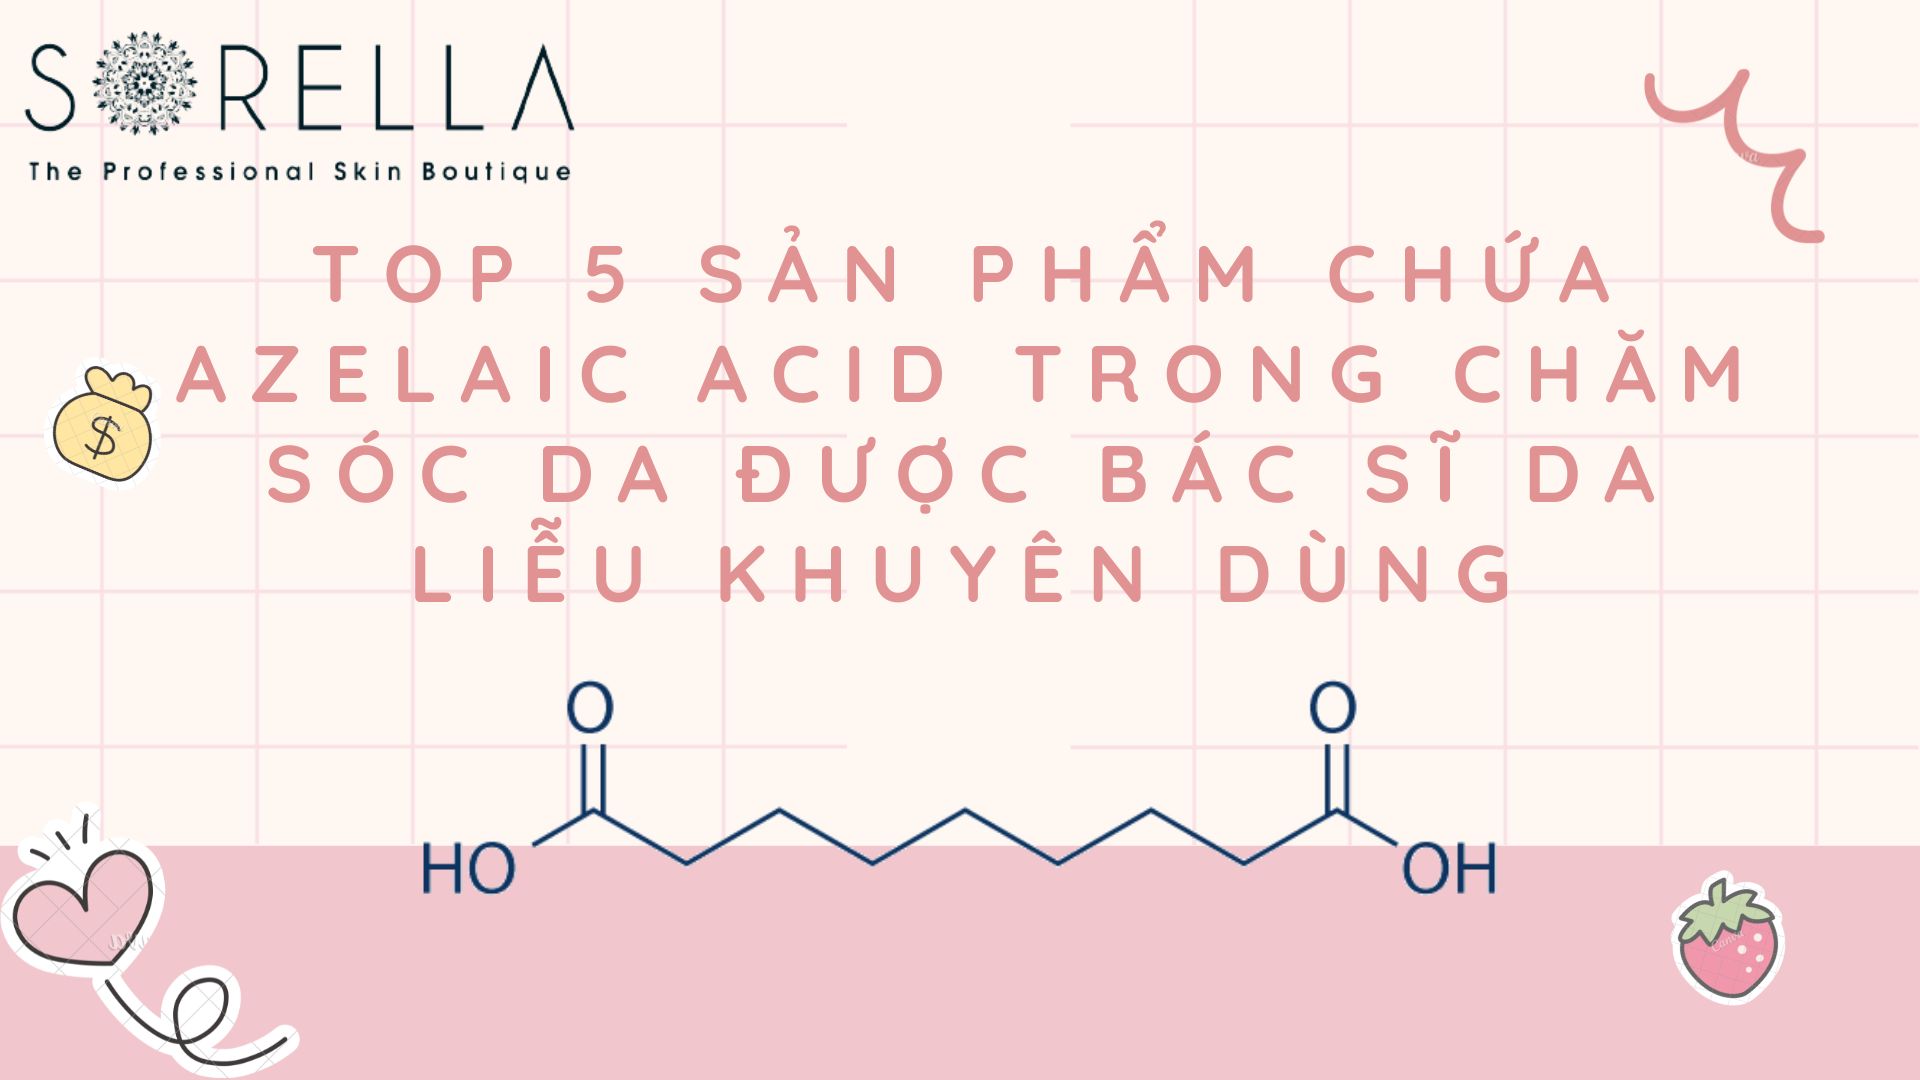 Top 5 sản phẩm chứa Azelaic Acid trong chăm sóc da được bác sĩ da liễu khuyên dùng